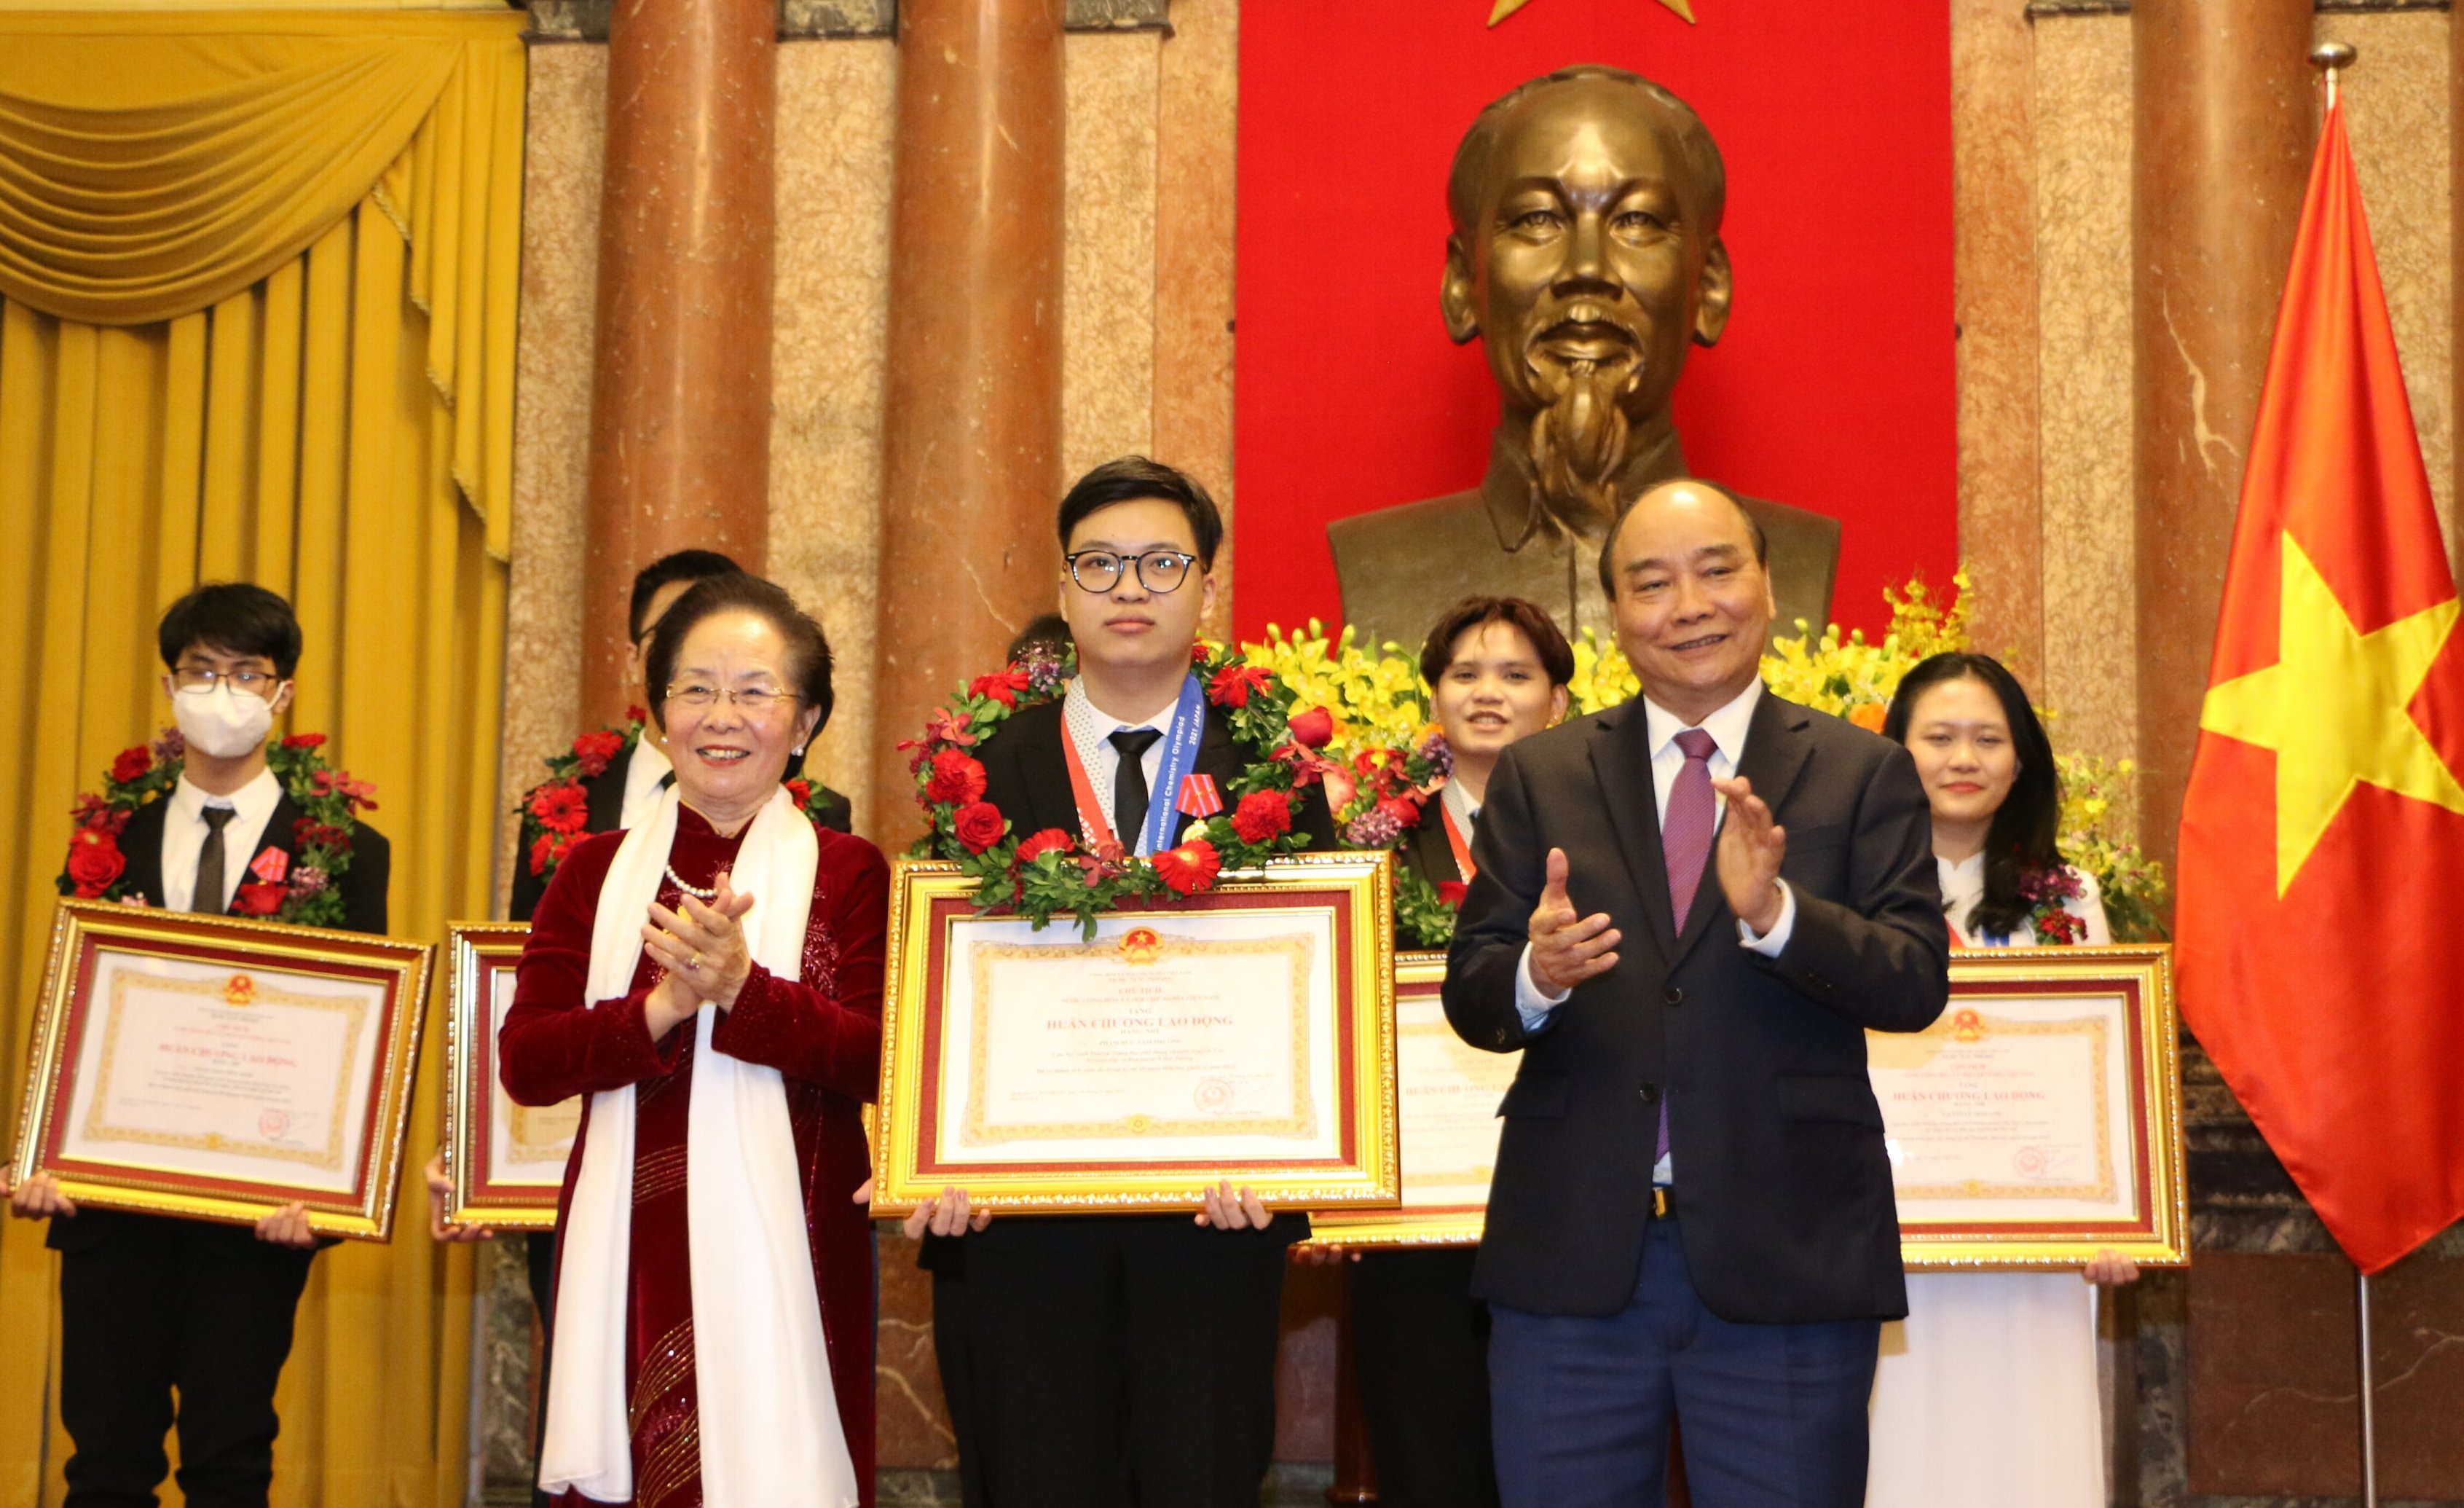 Nam sinh Phạm Đức Nam Phương được đề cử Giải thưởng Gương mặt trẻ Việt Nam tiêu biểu 2021 trong lĩnh vực học tập.